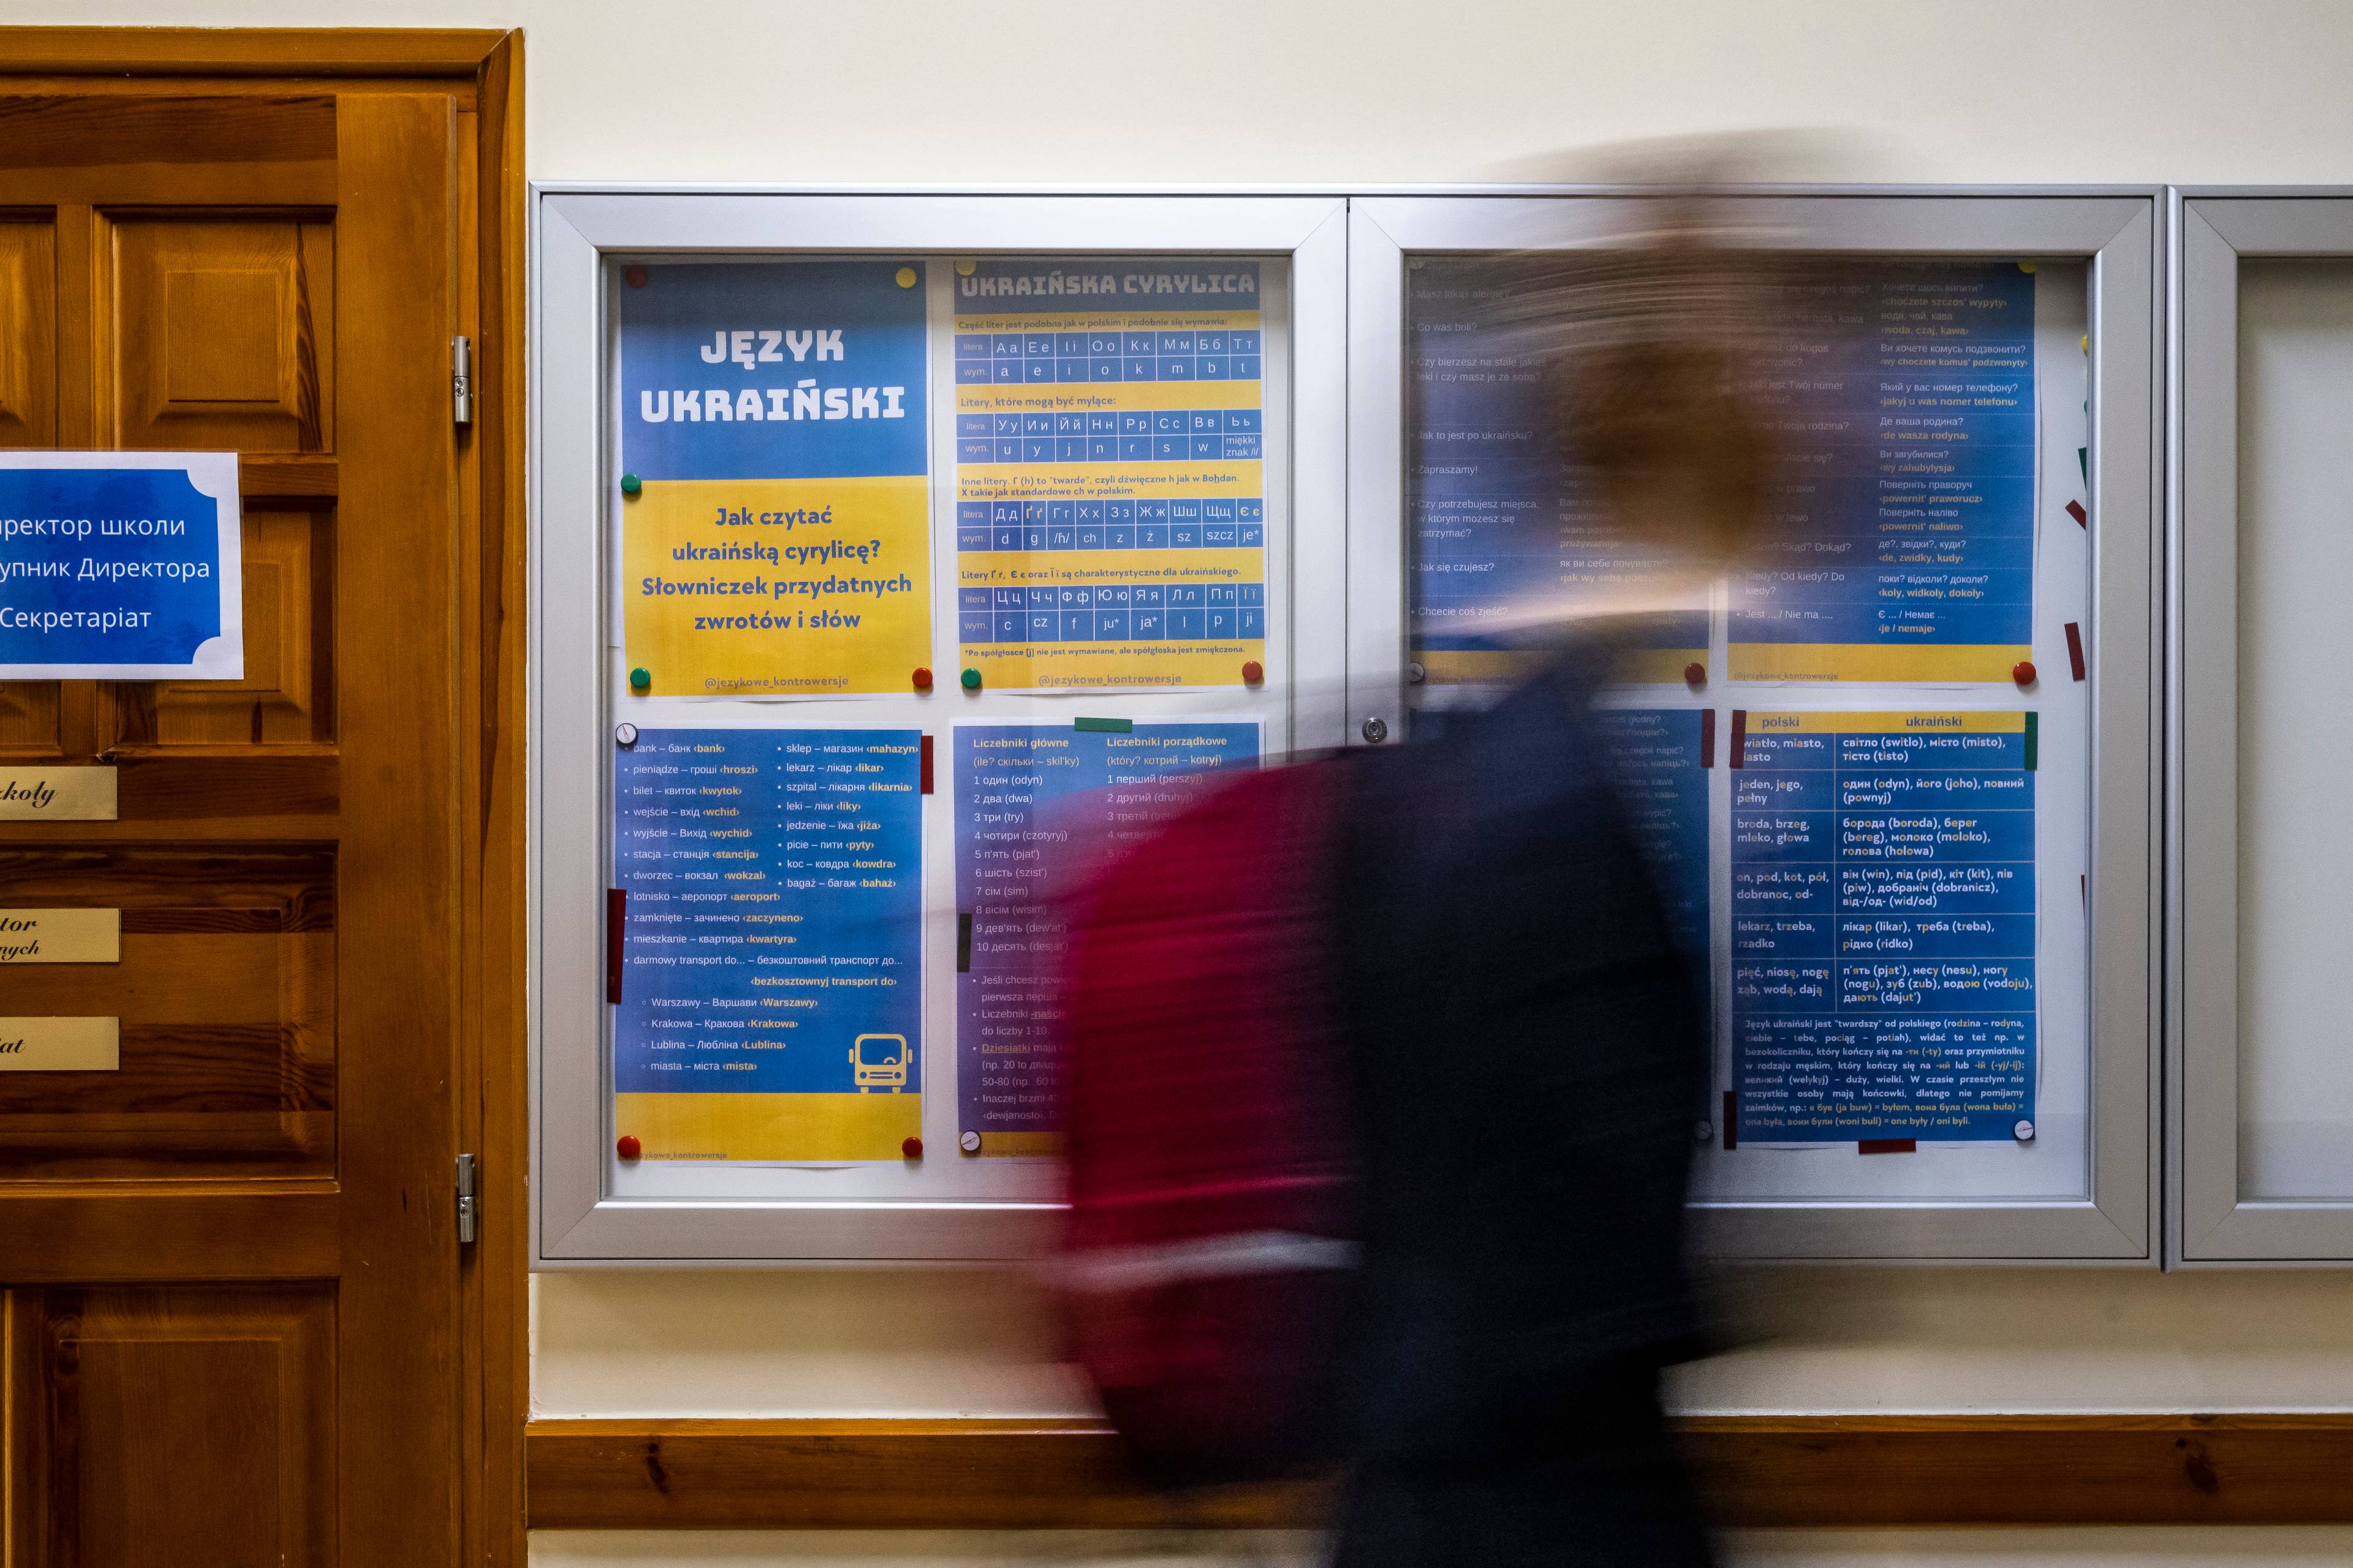 Uczeń przechodzi obok tablicy z gramatyką w języku ukraińskim i polskim na korytarzu liceum.